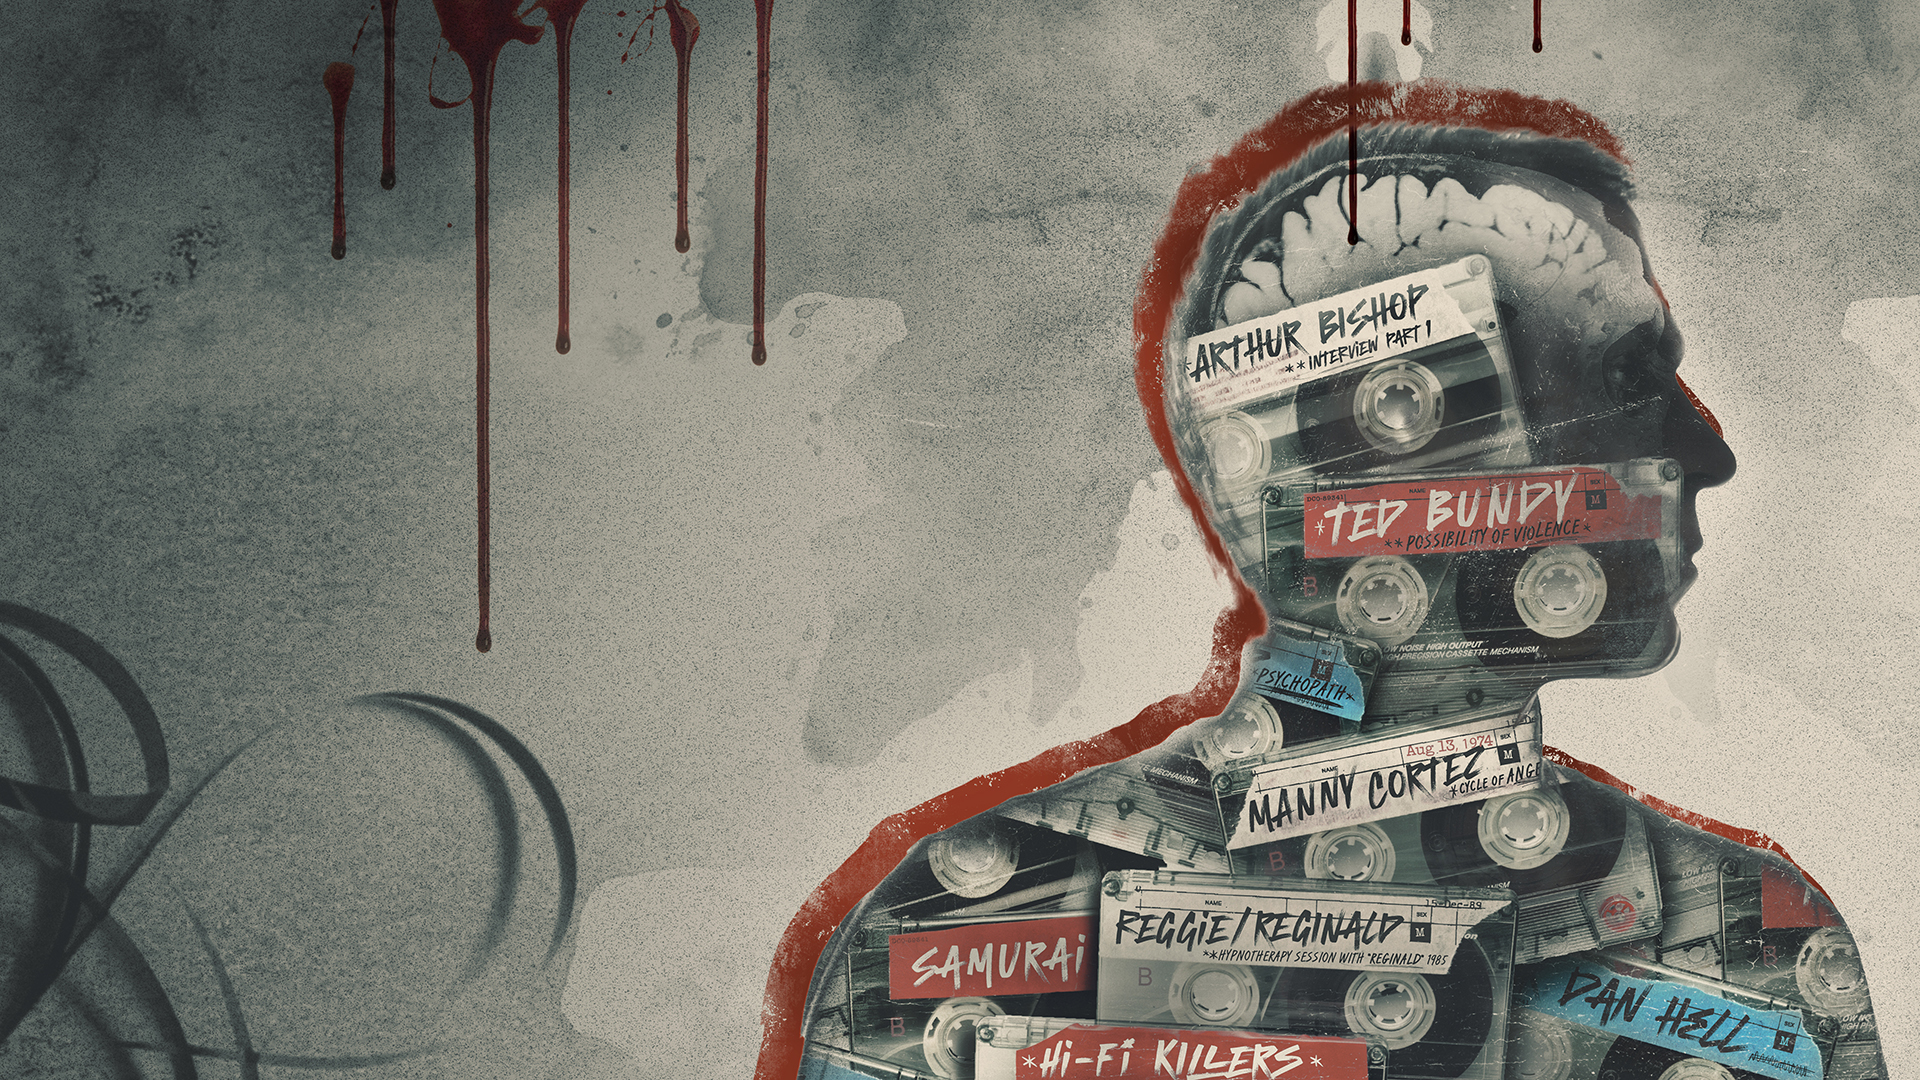 AMC CRIME estreia “Mentes Violentas: Gravações dos Assassinos”